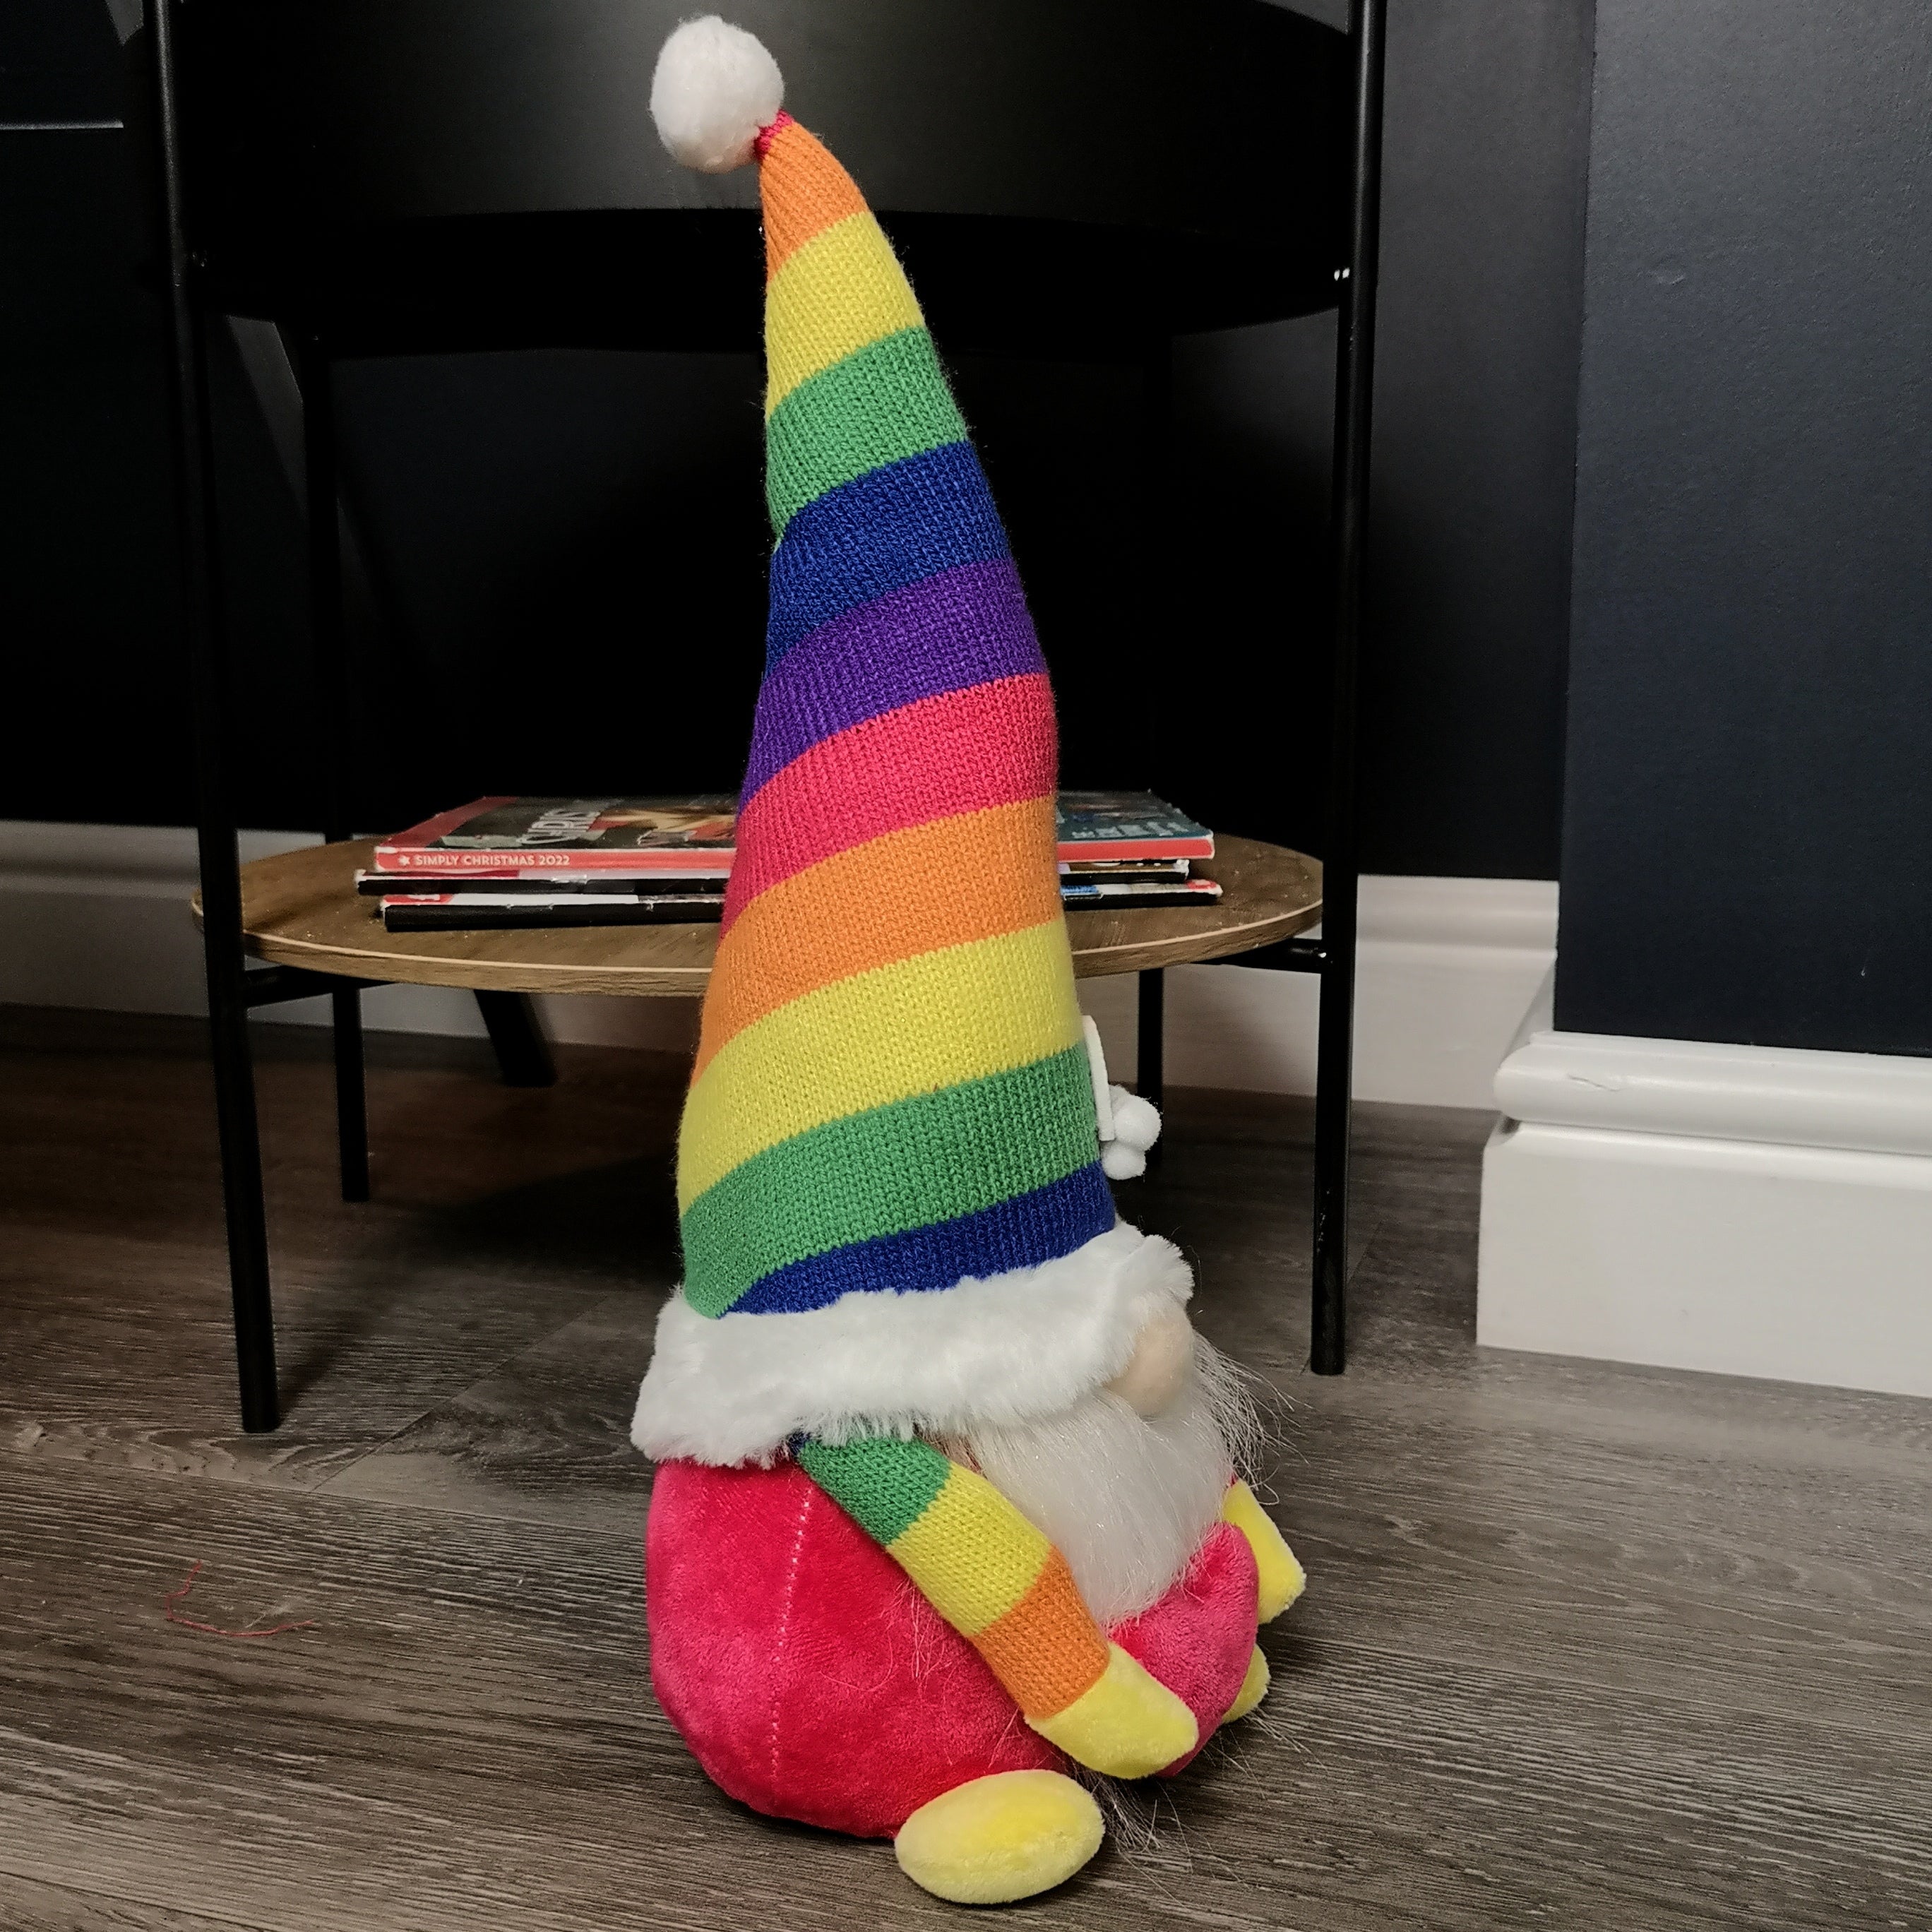 39cm Sitting Plush Rainbow Christmas Gonk Decoration